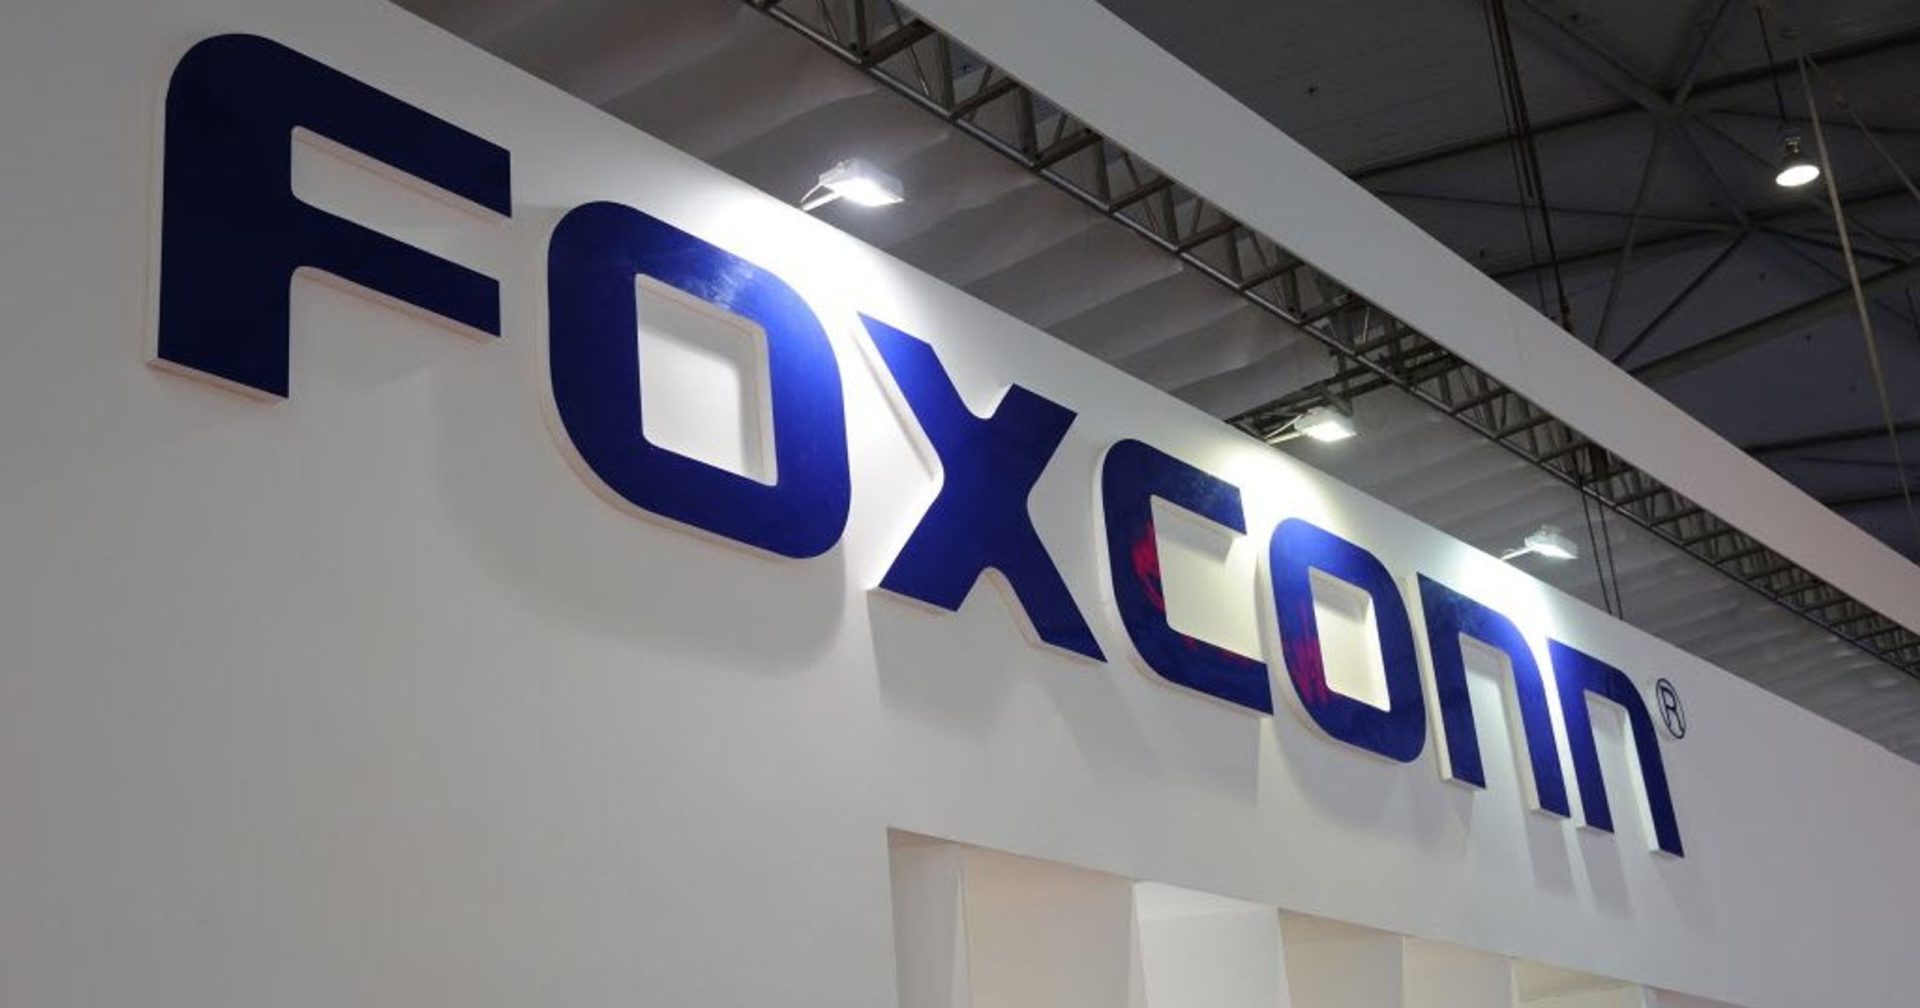 โรงงานผลิต iPhone ของ Foxconn ที่ใหญ่ที่สุดในโลก ถูกล็อกดาวน์เพราะโควิด